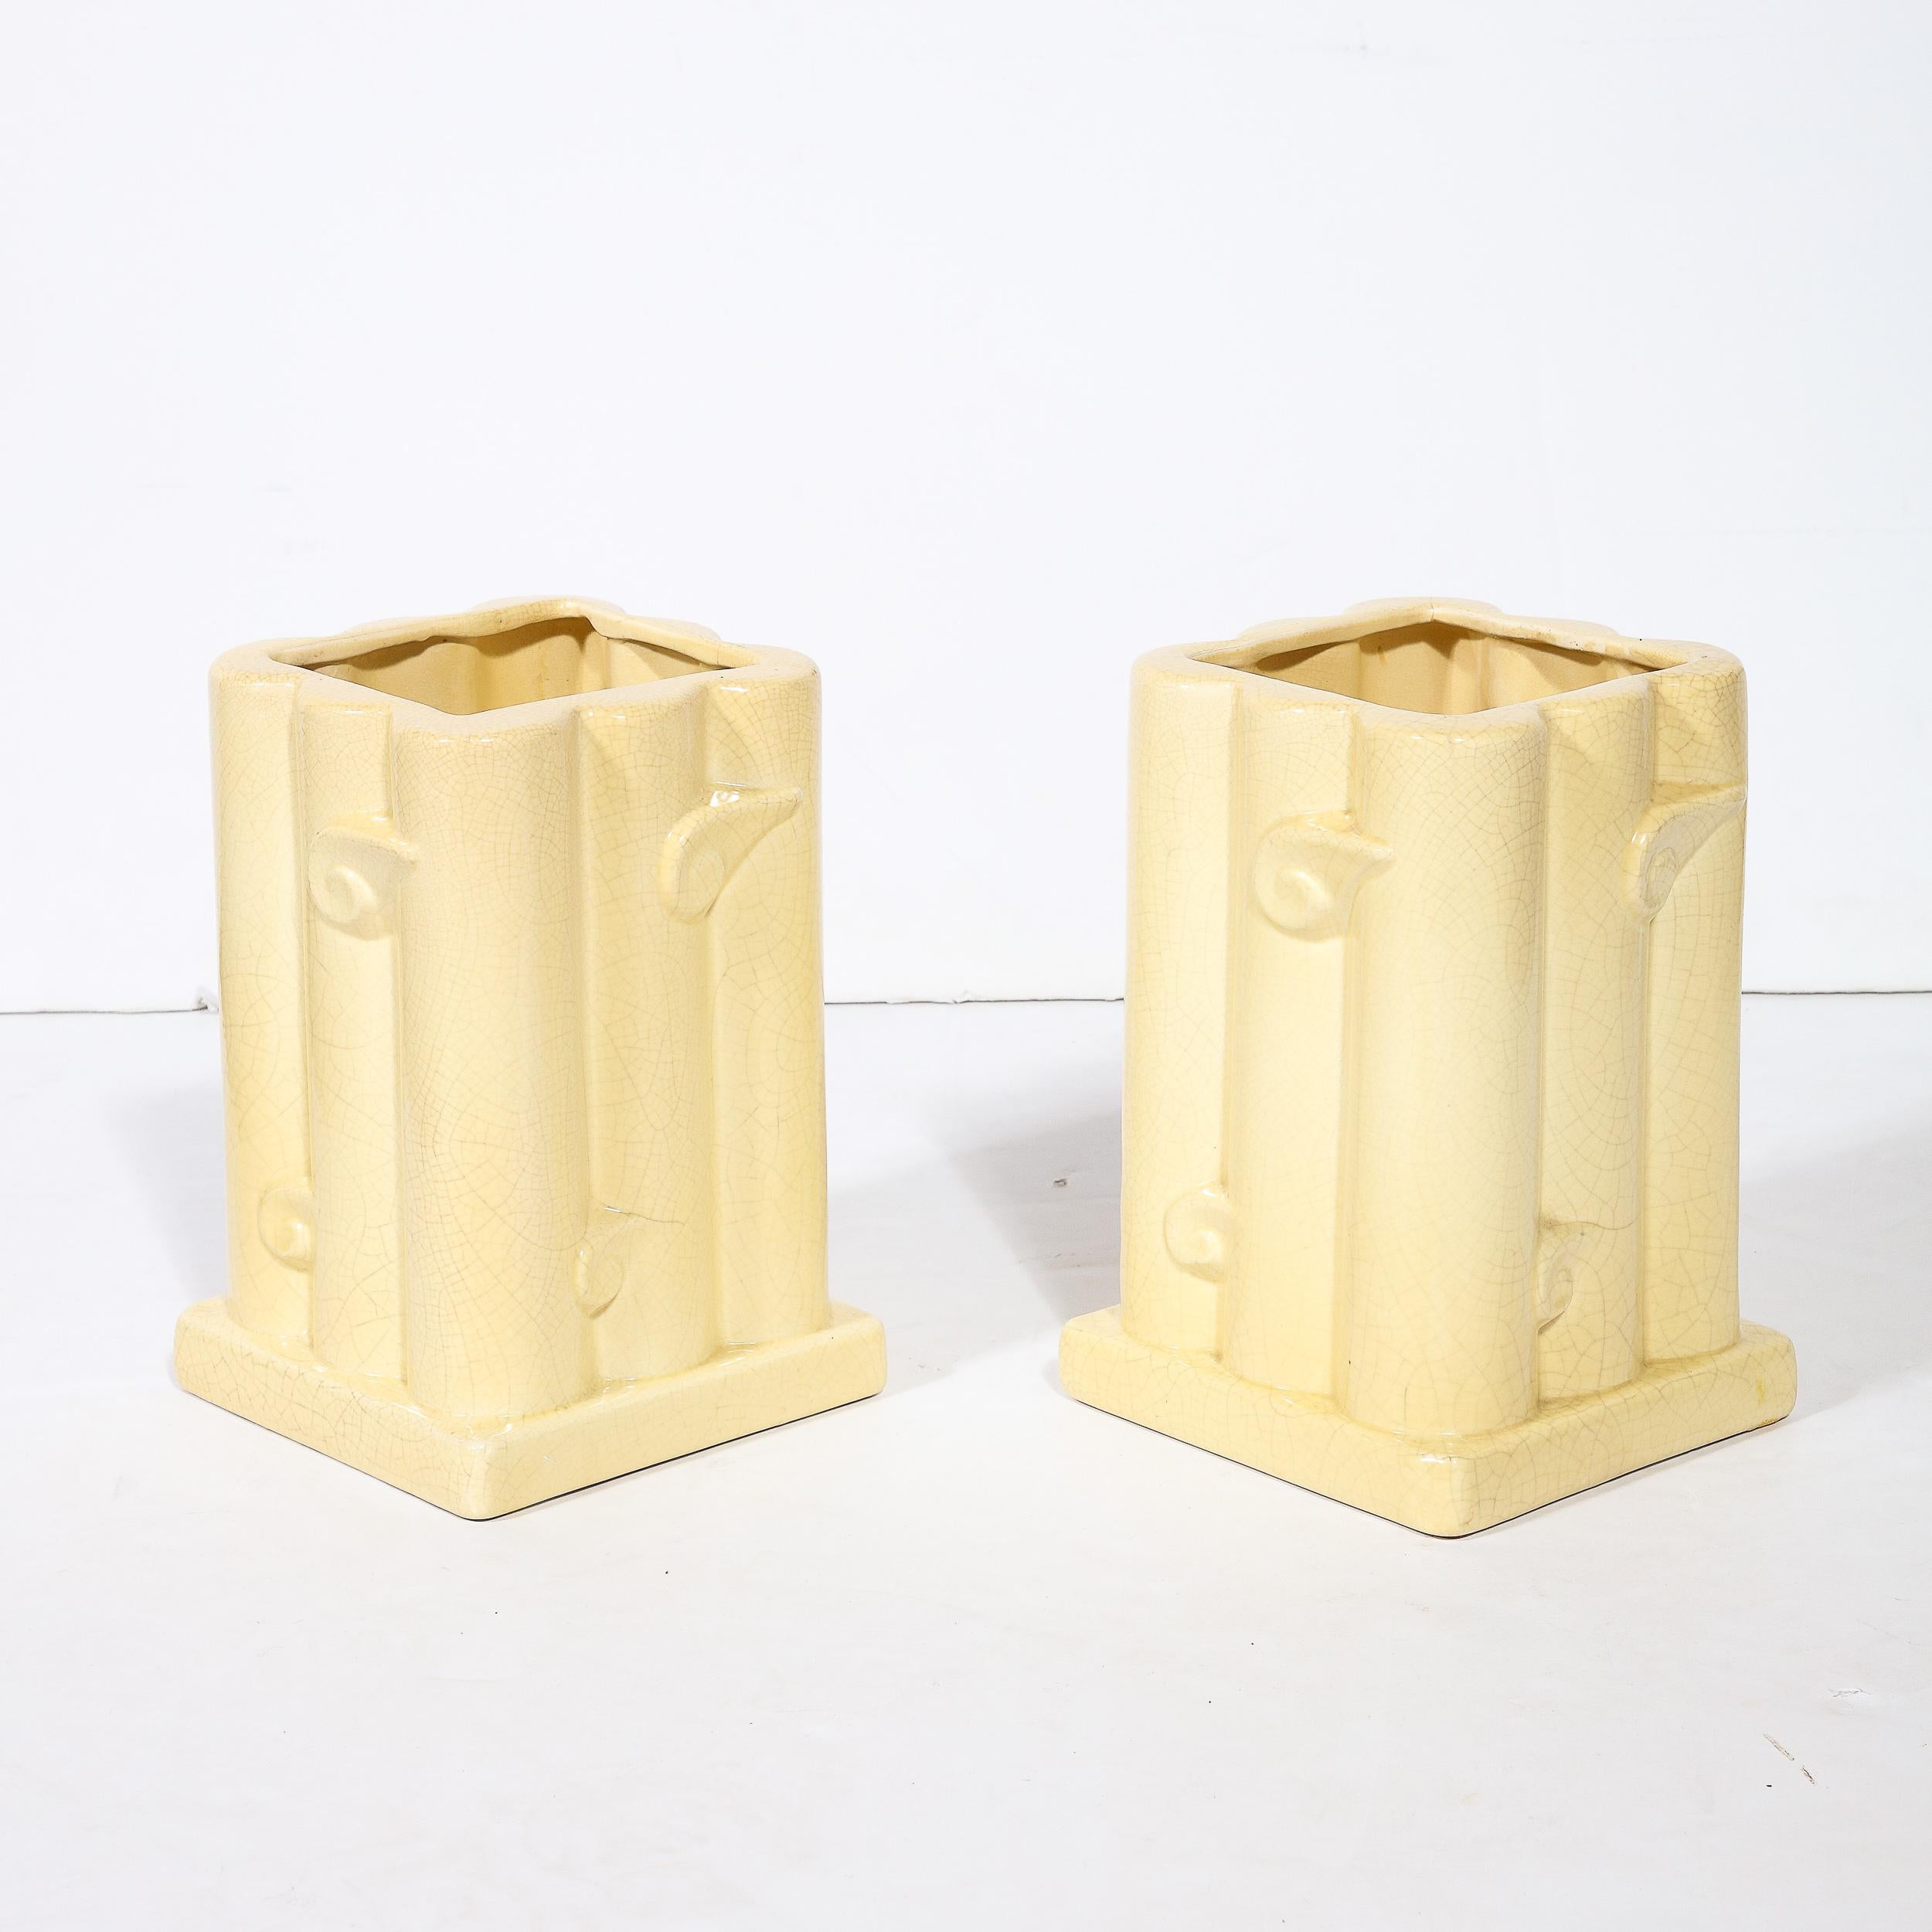 Pair of Art Deco Cream Ceramic Vases W/ Stylized Cloud Motif & Craqueleur Finish For Sale 4